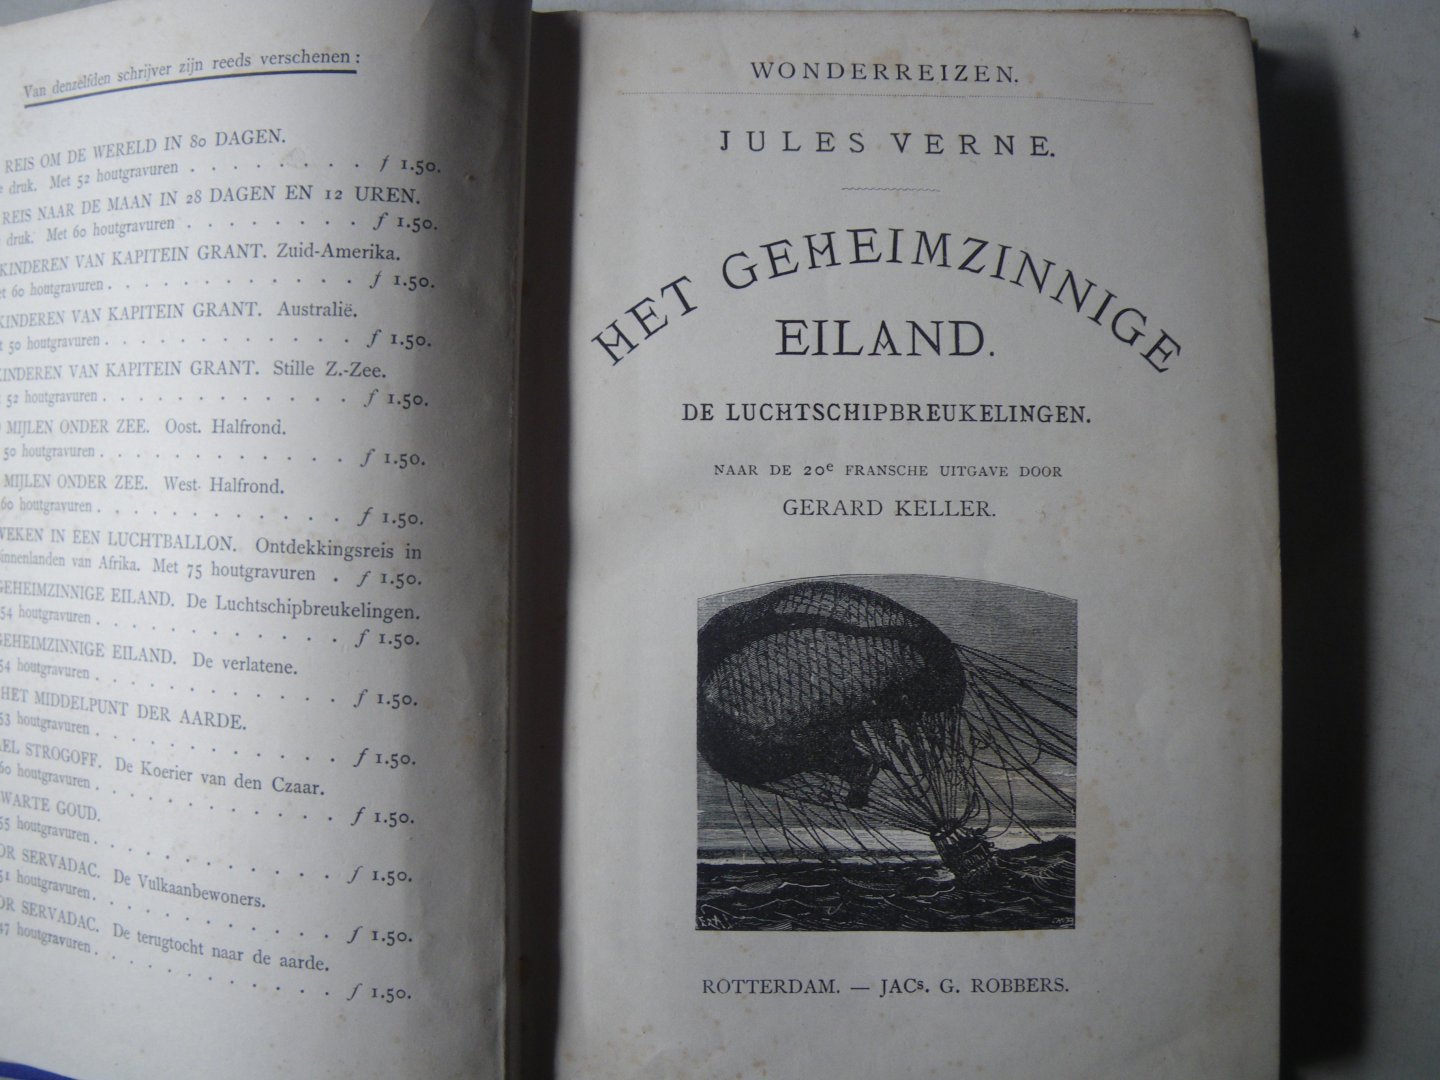 Verne, Jules - Wonderreizen: Het geheimzinnige eiland , De Luchtschipbreukelingen (naar de 20e fransche uitgave door Gerard Keller)